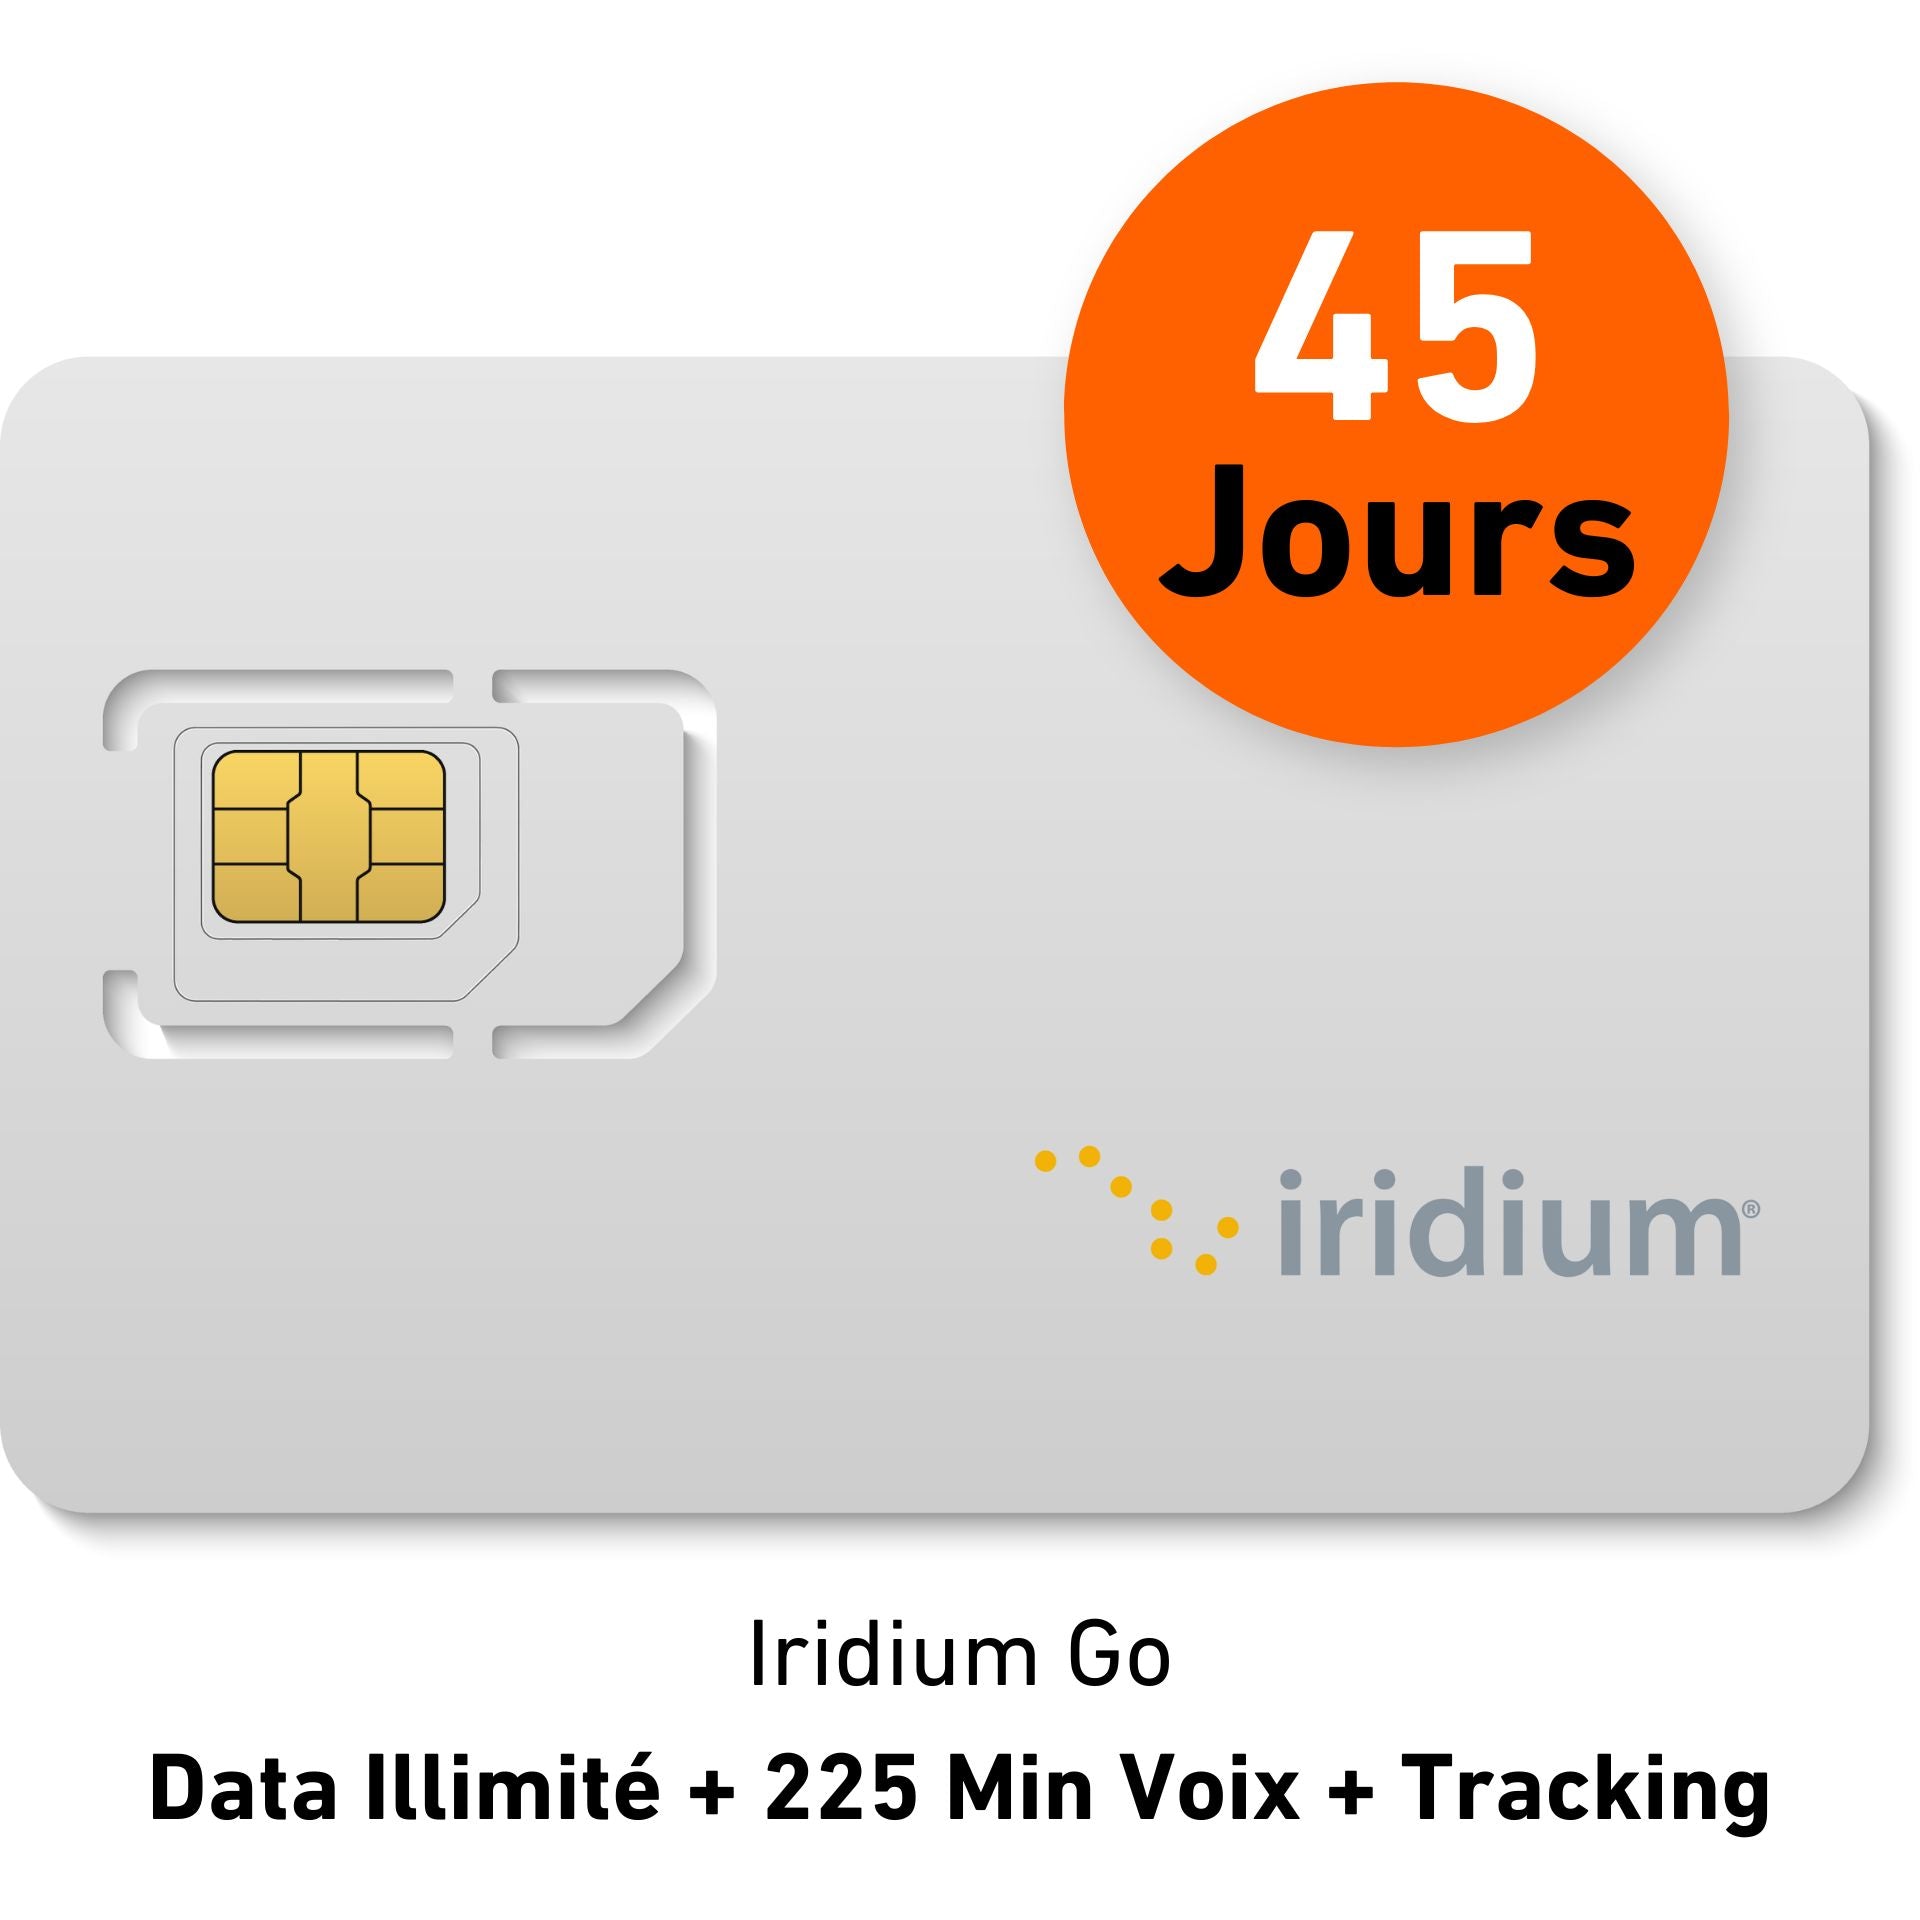 Suscripción de 45 días - IRIDIUM GO DATA - Ilimitado + 225 MIN DE VOZ + Seguimiento